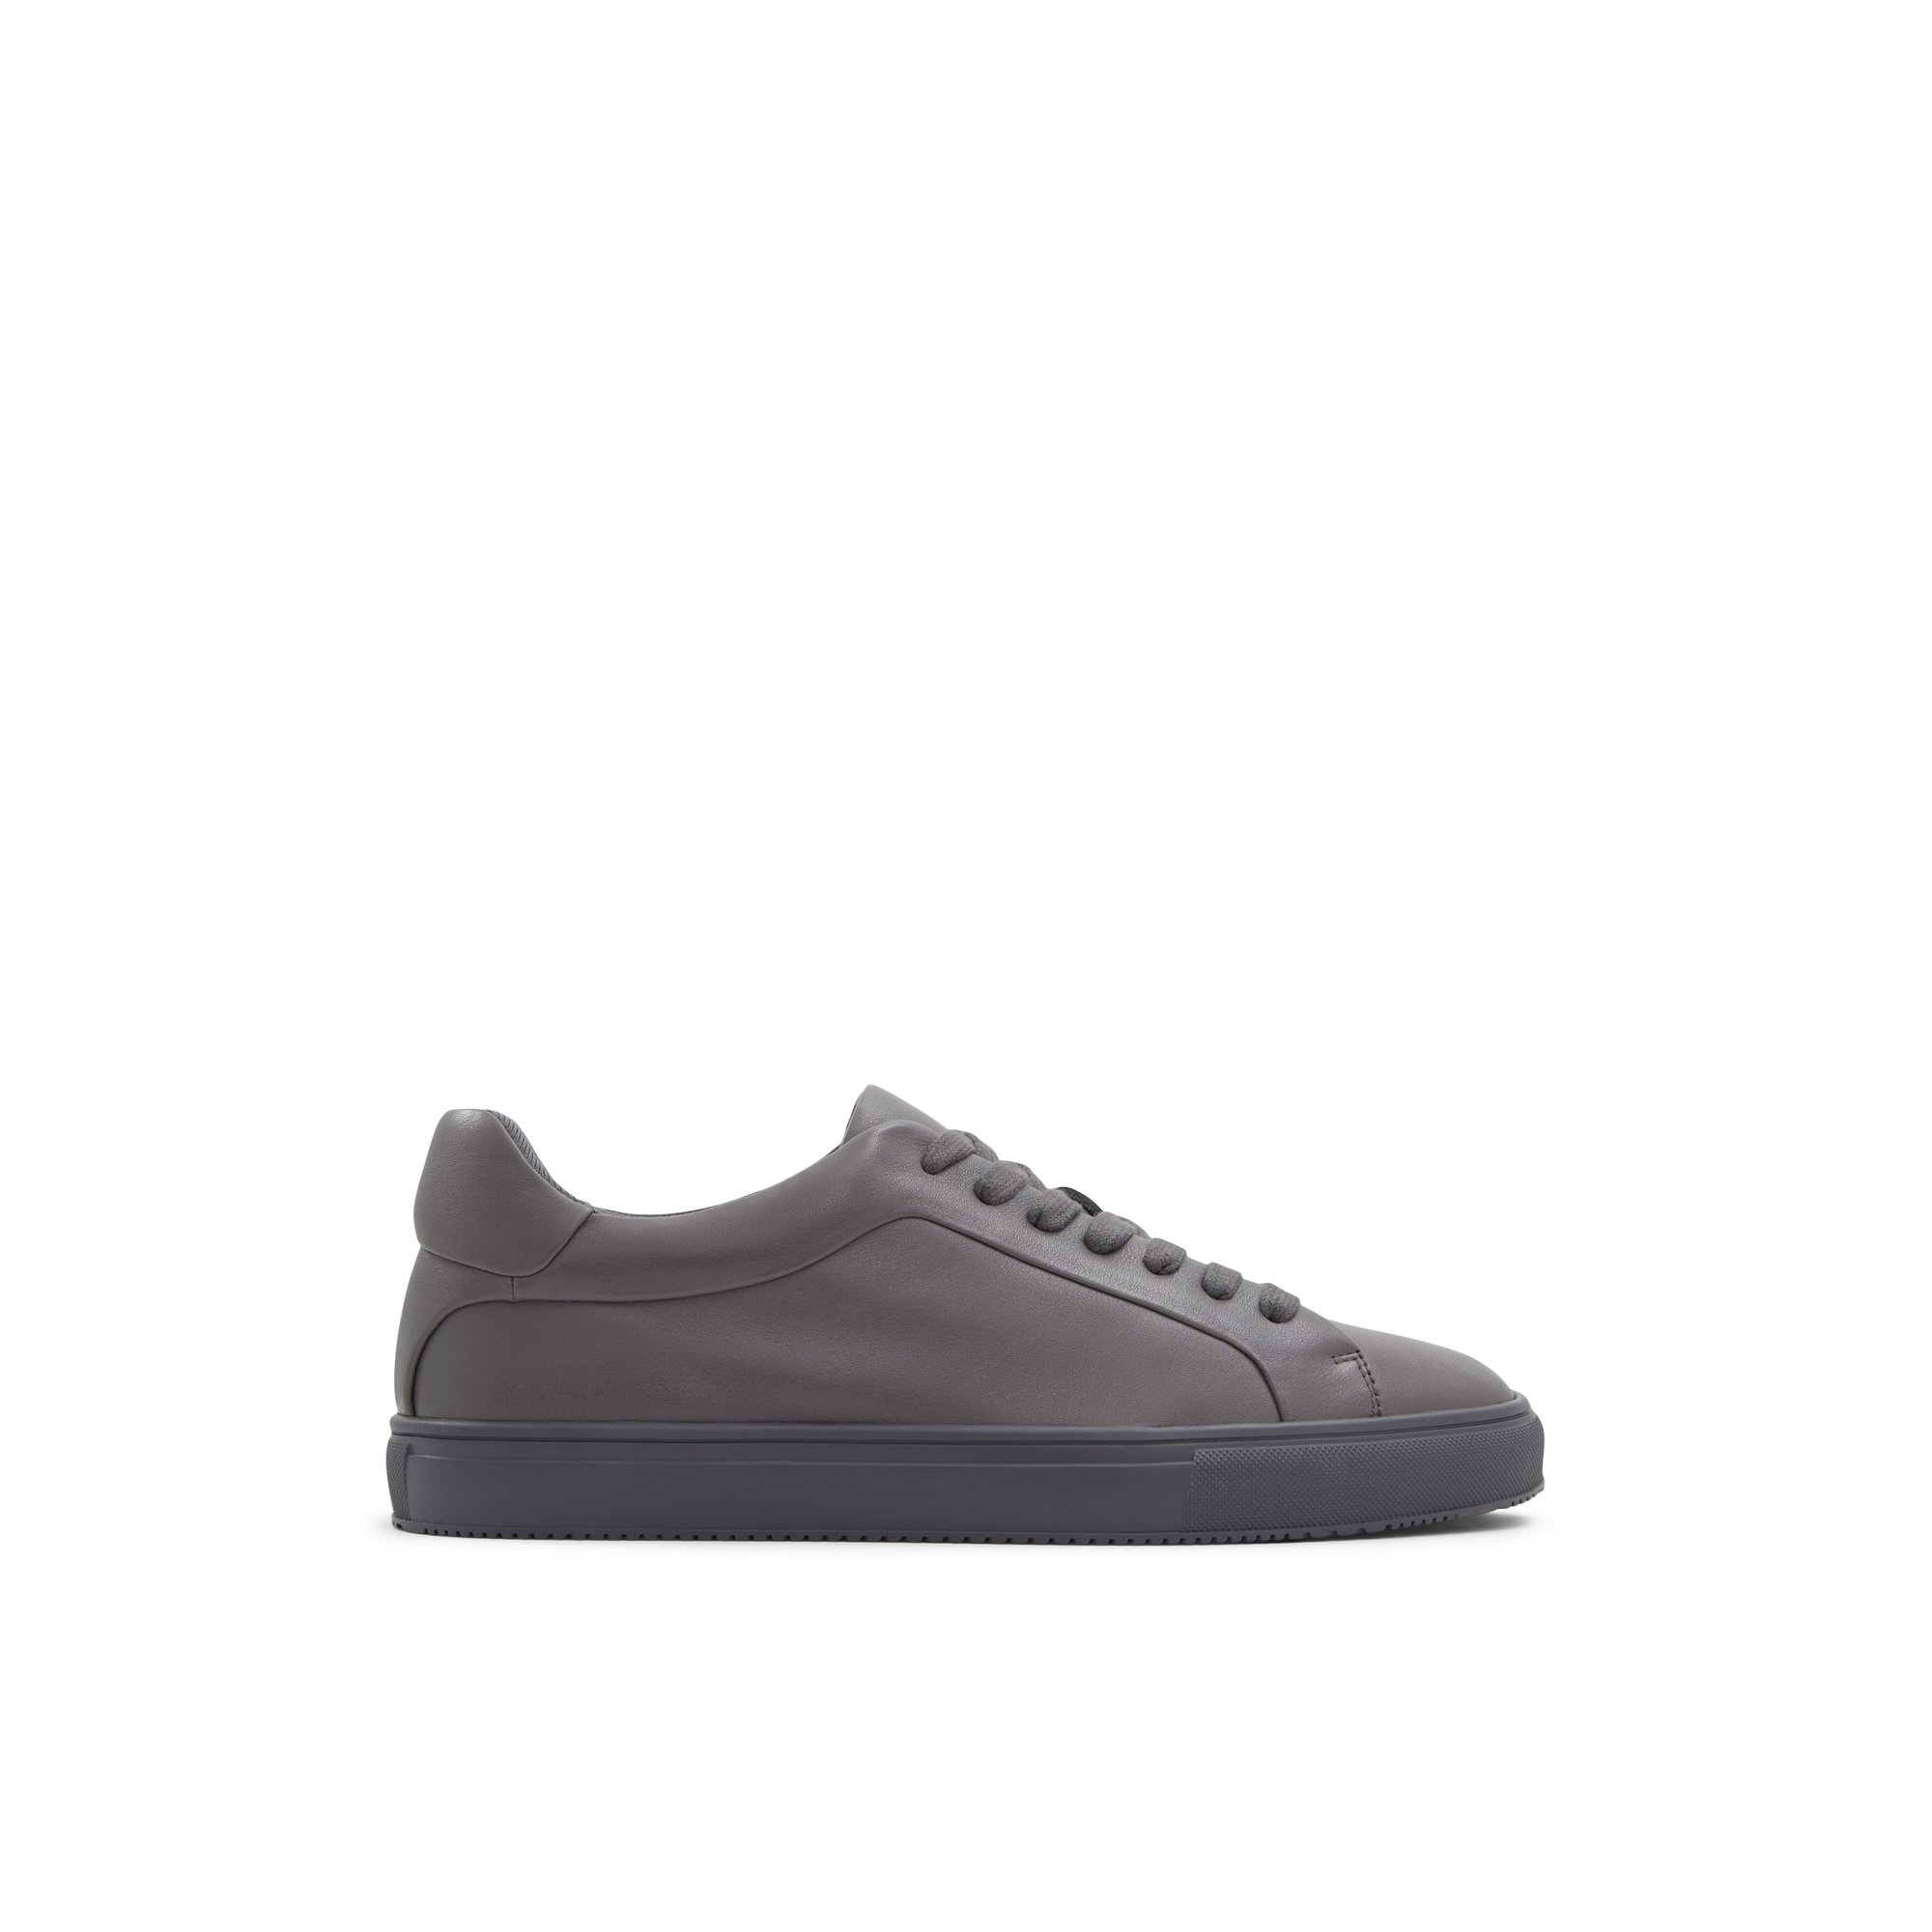 ALDO Cobi - Men's Sneaker - Gray